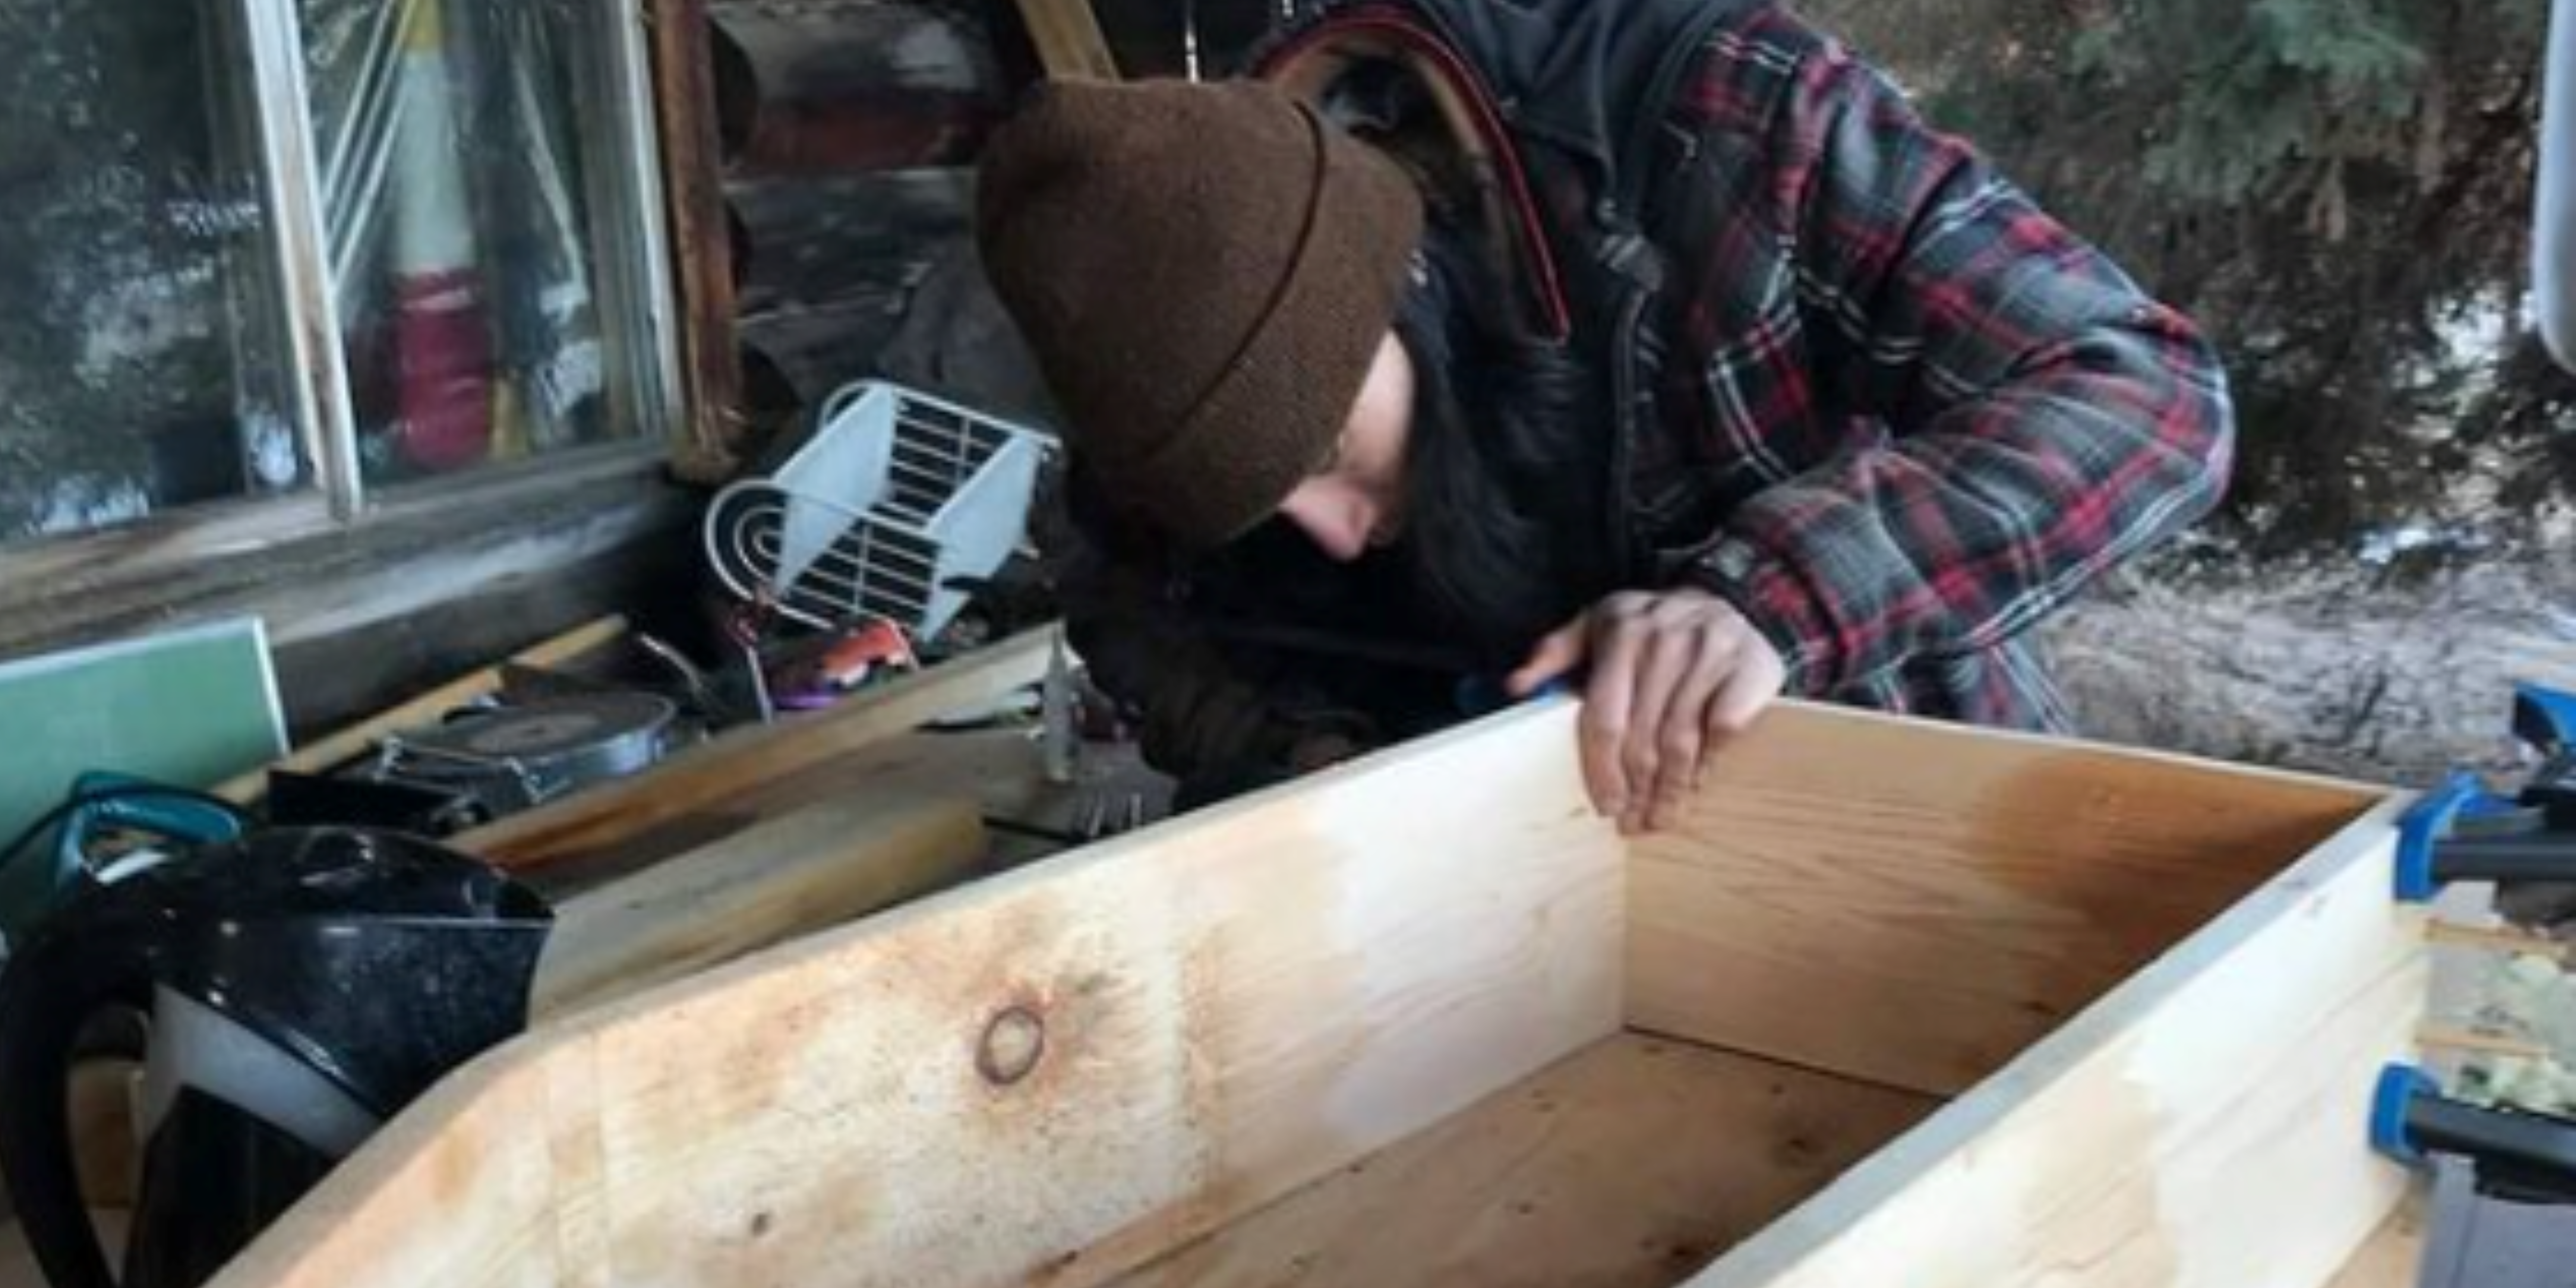 Denzel building a bent box